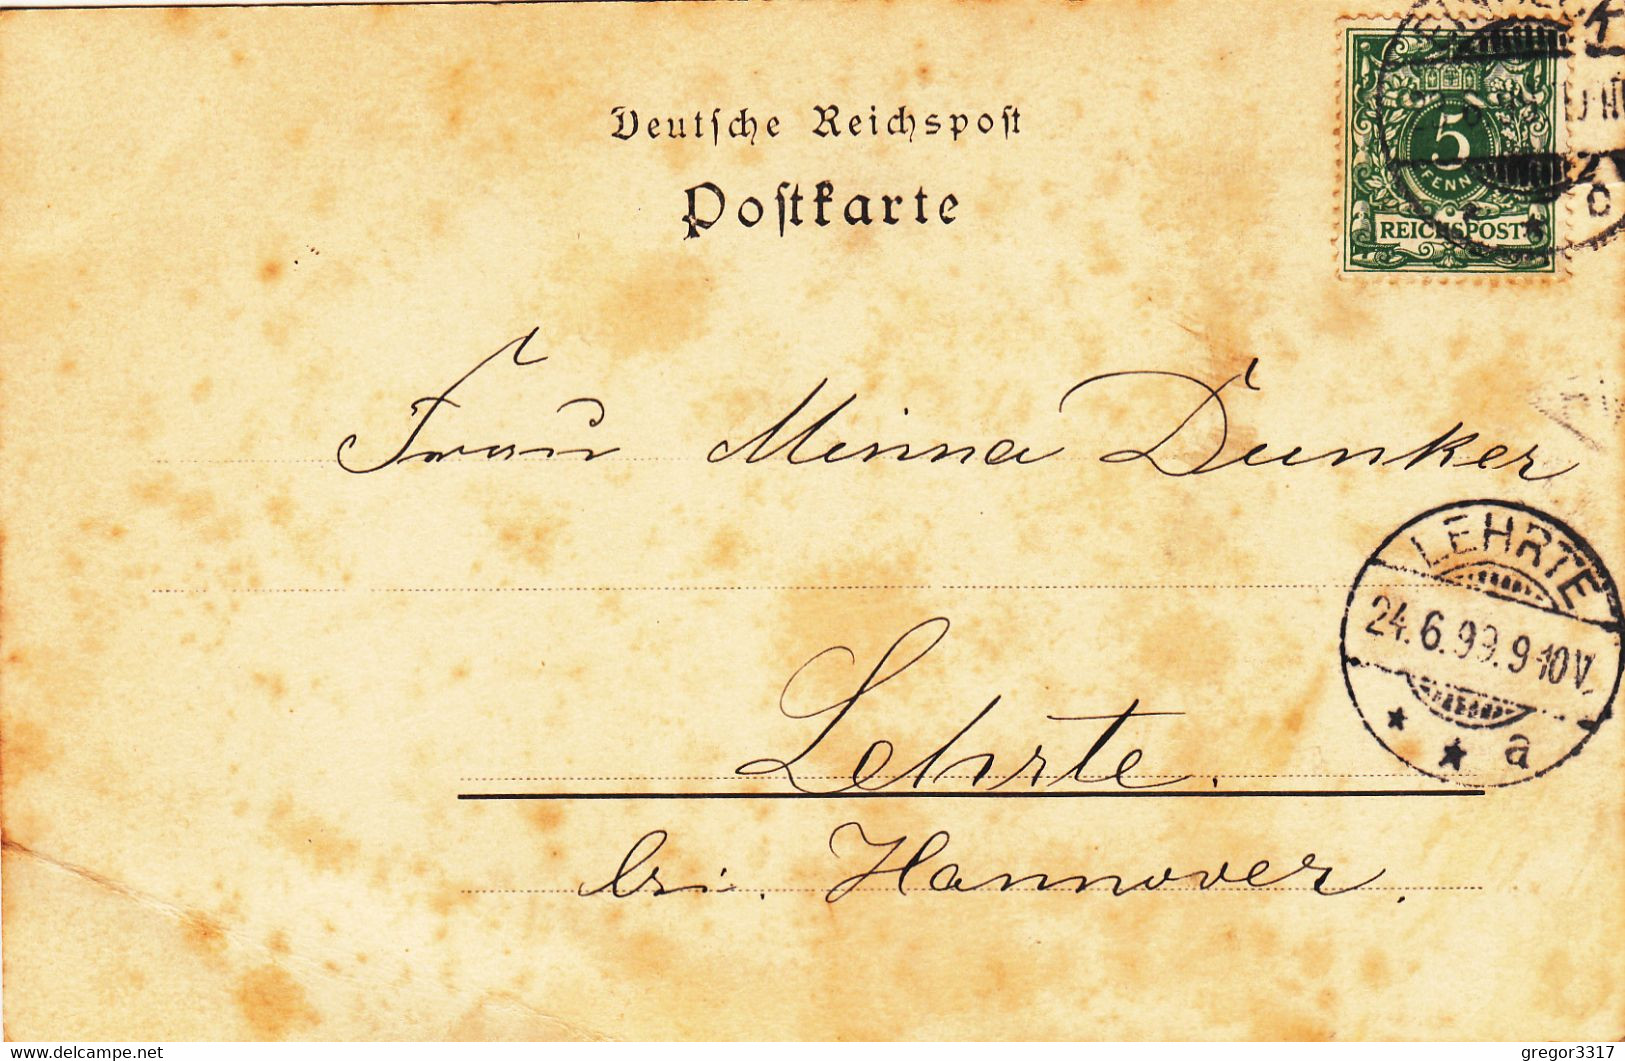 7142) EINBECK - Alte STADTMAUER - H.  Ehlers Buchhandlung - SEHR ALT !!! 22.06.1899 !! - Einbeck